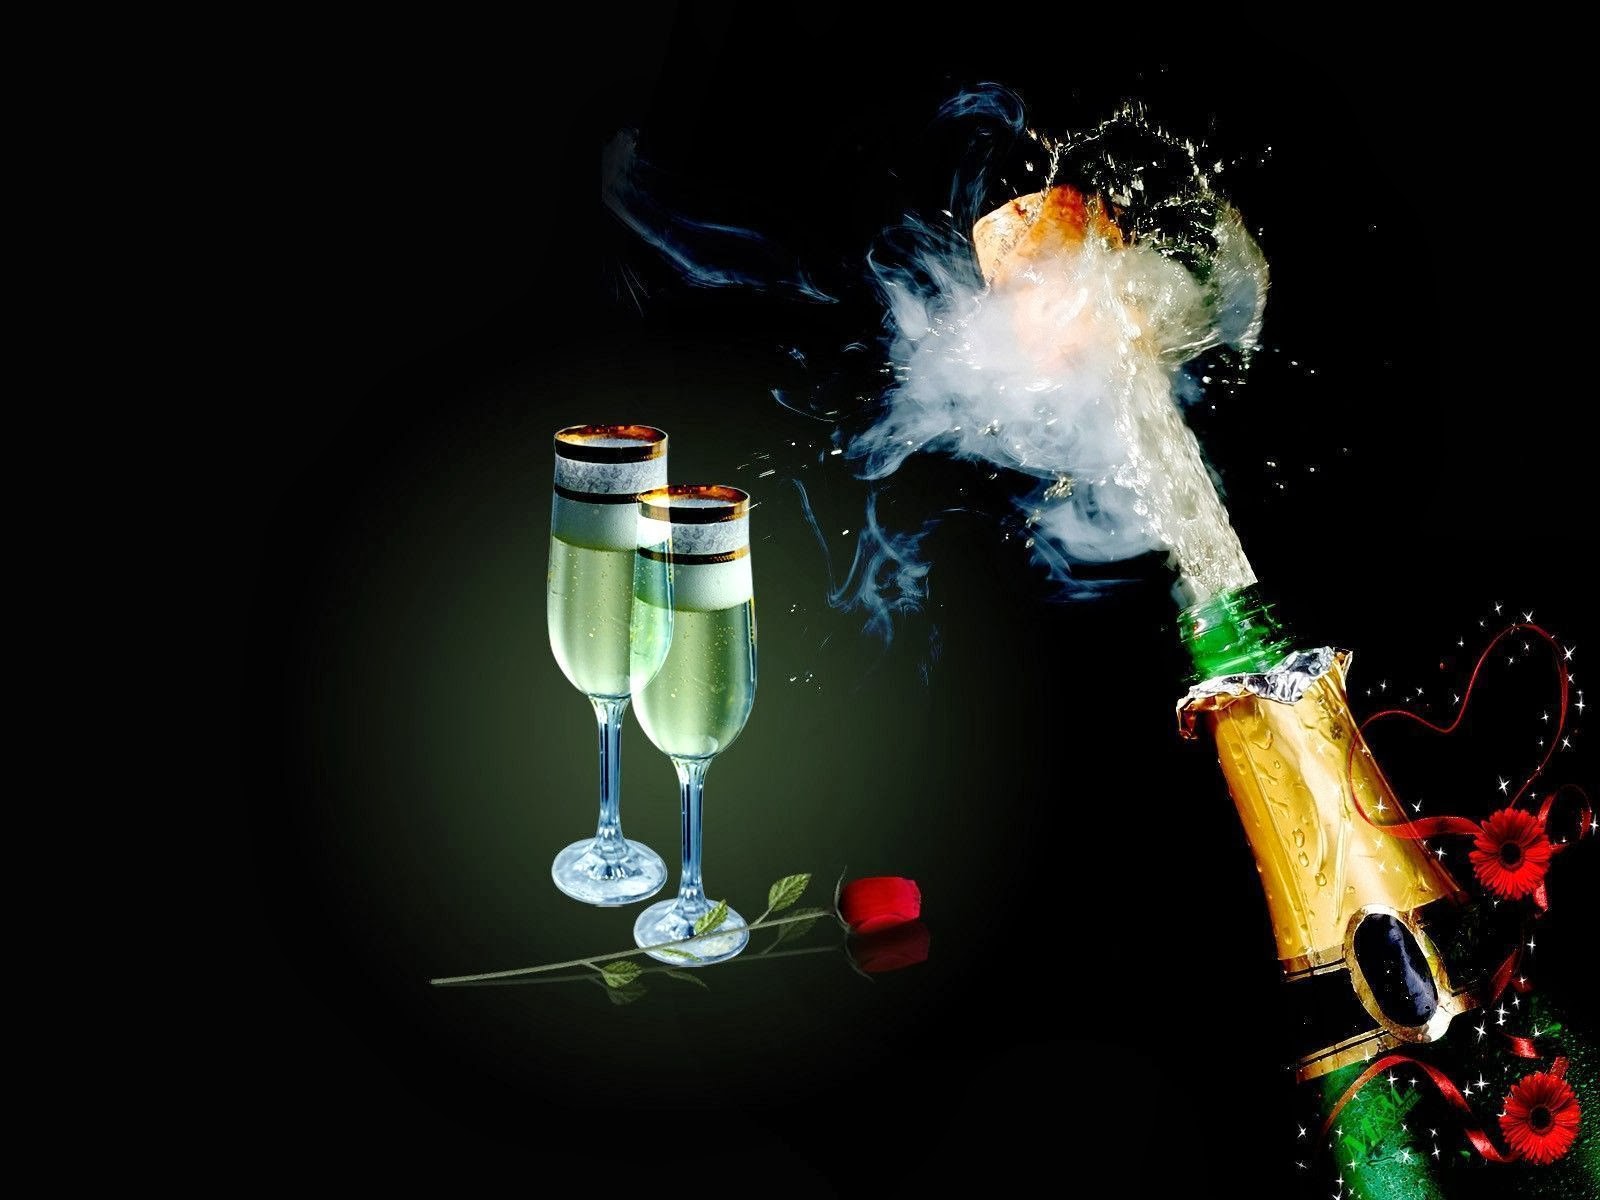 fond d'écran champagne,de l'alcool,boisson,fumée,verres à pied champagne,champagne